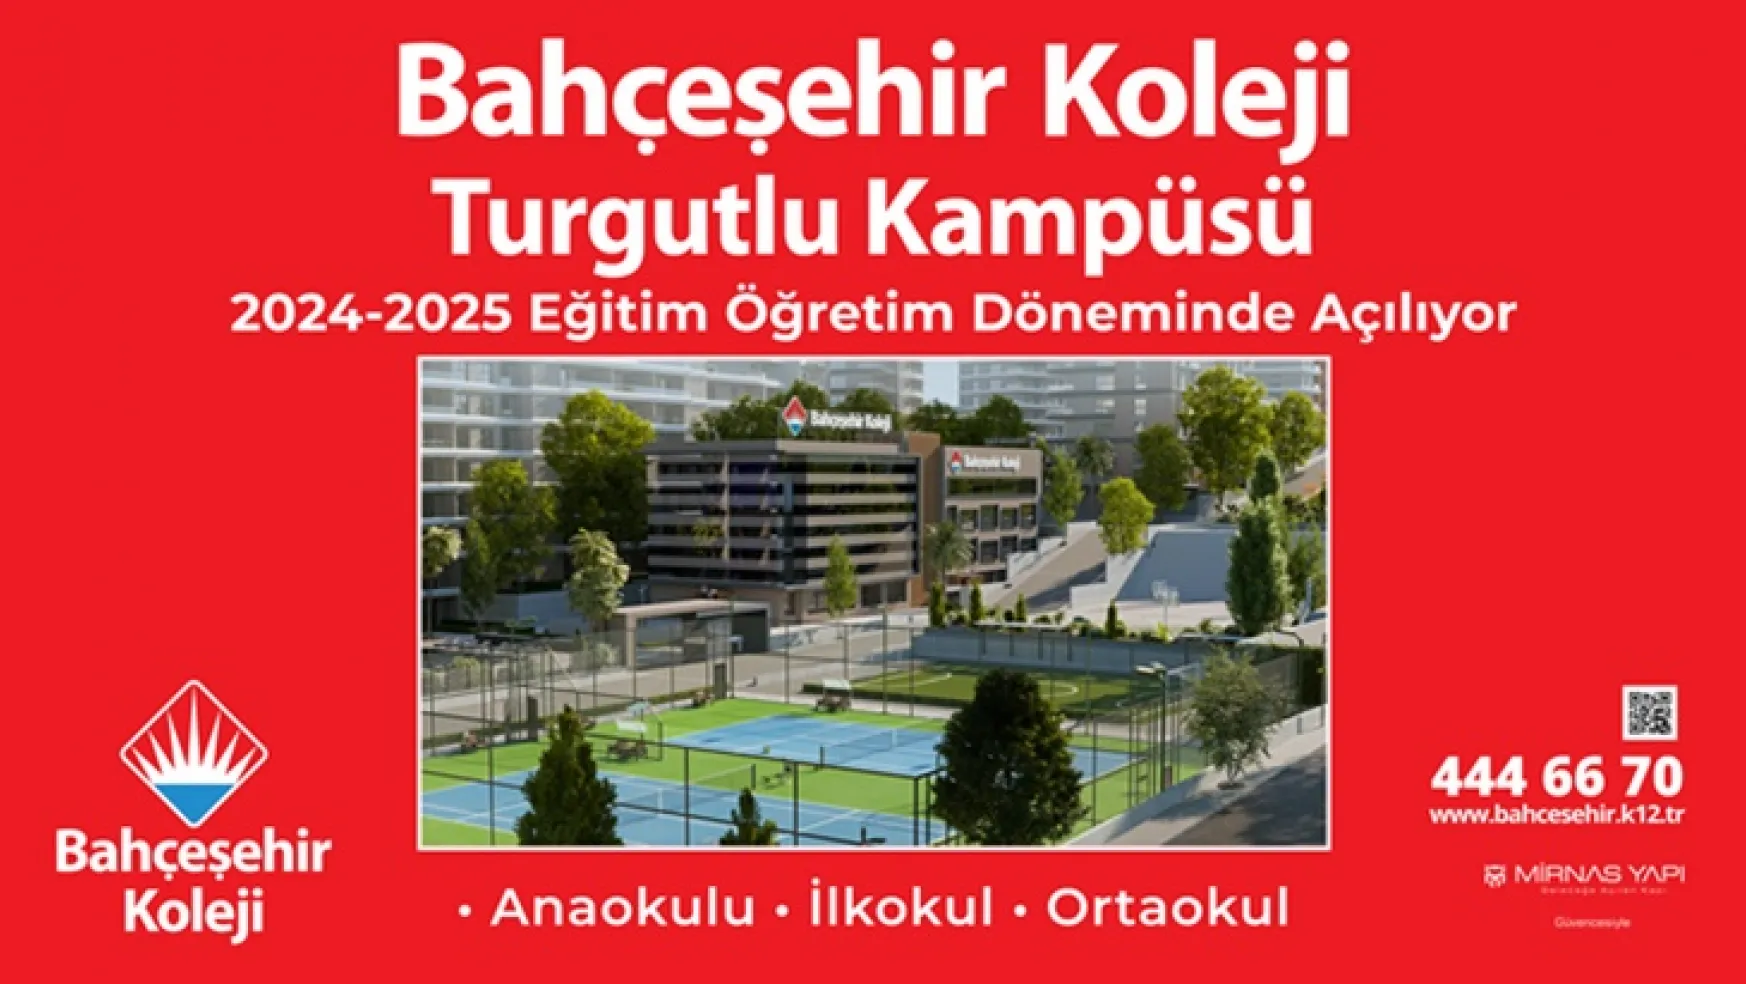 Bahçeşehir Koleji Turgutlu Kampüsü  2024-2025 Eğitim Öğretim Yılında Turgutlu'da Açılıyor